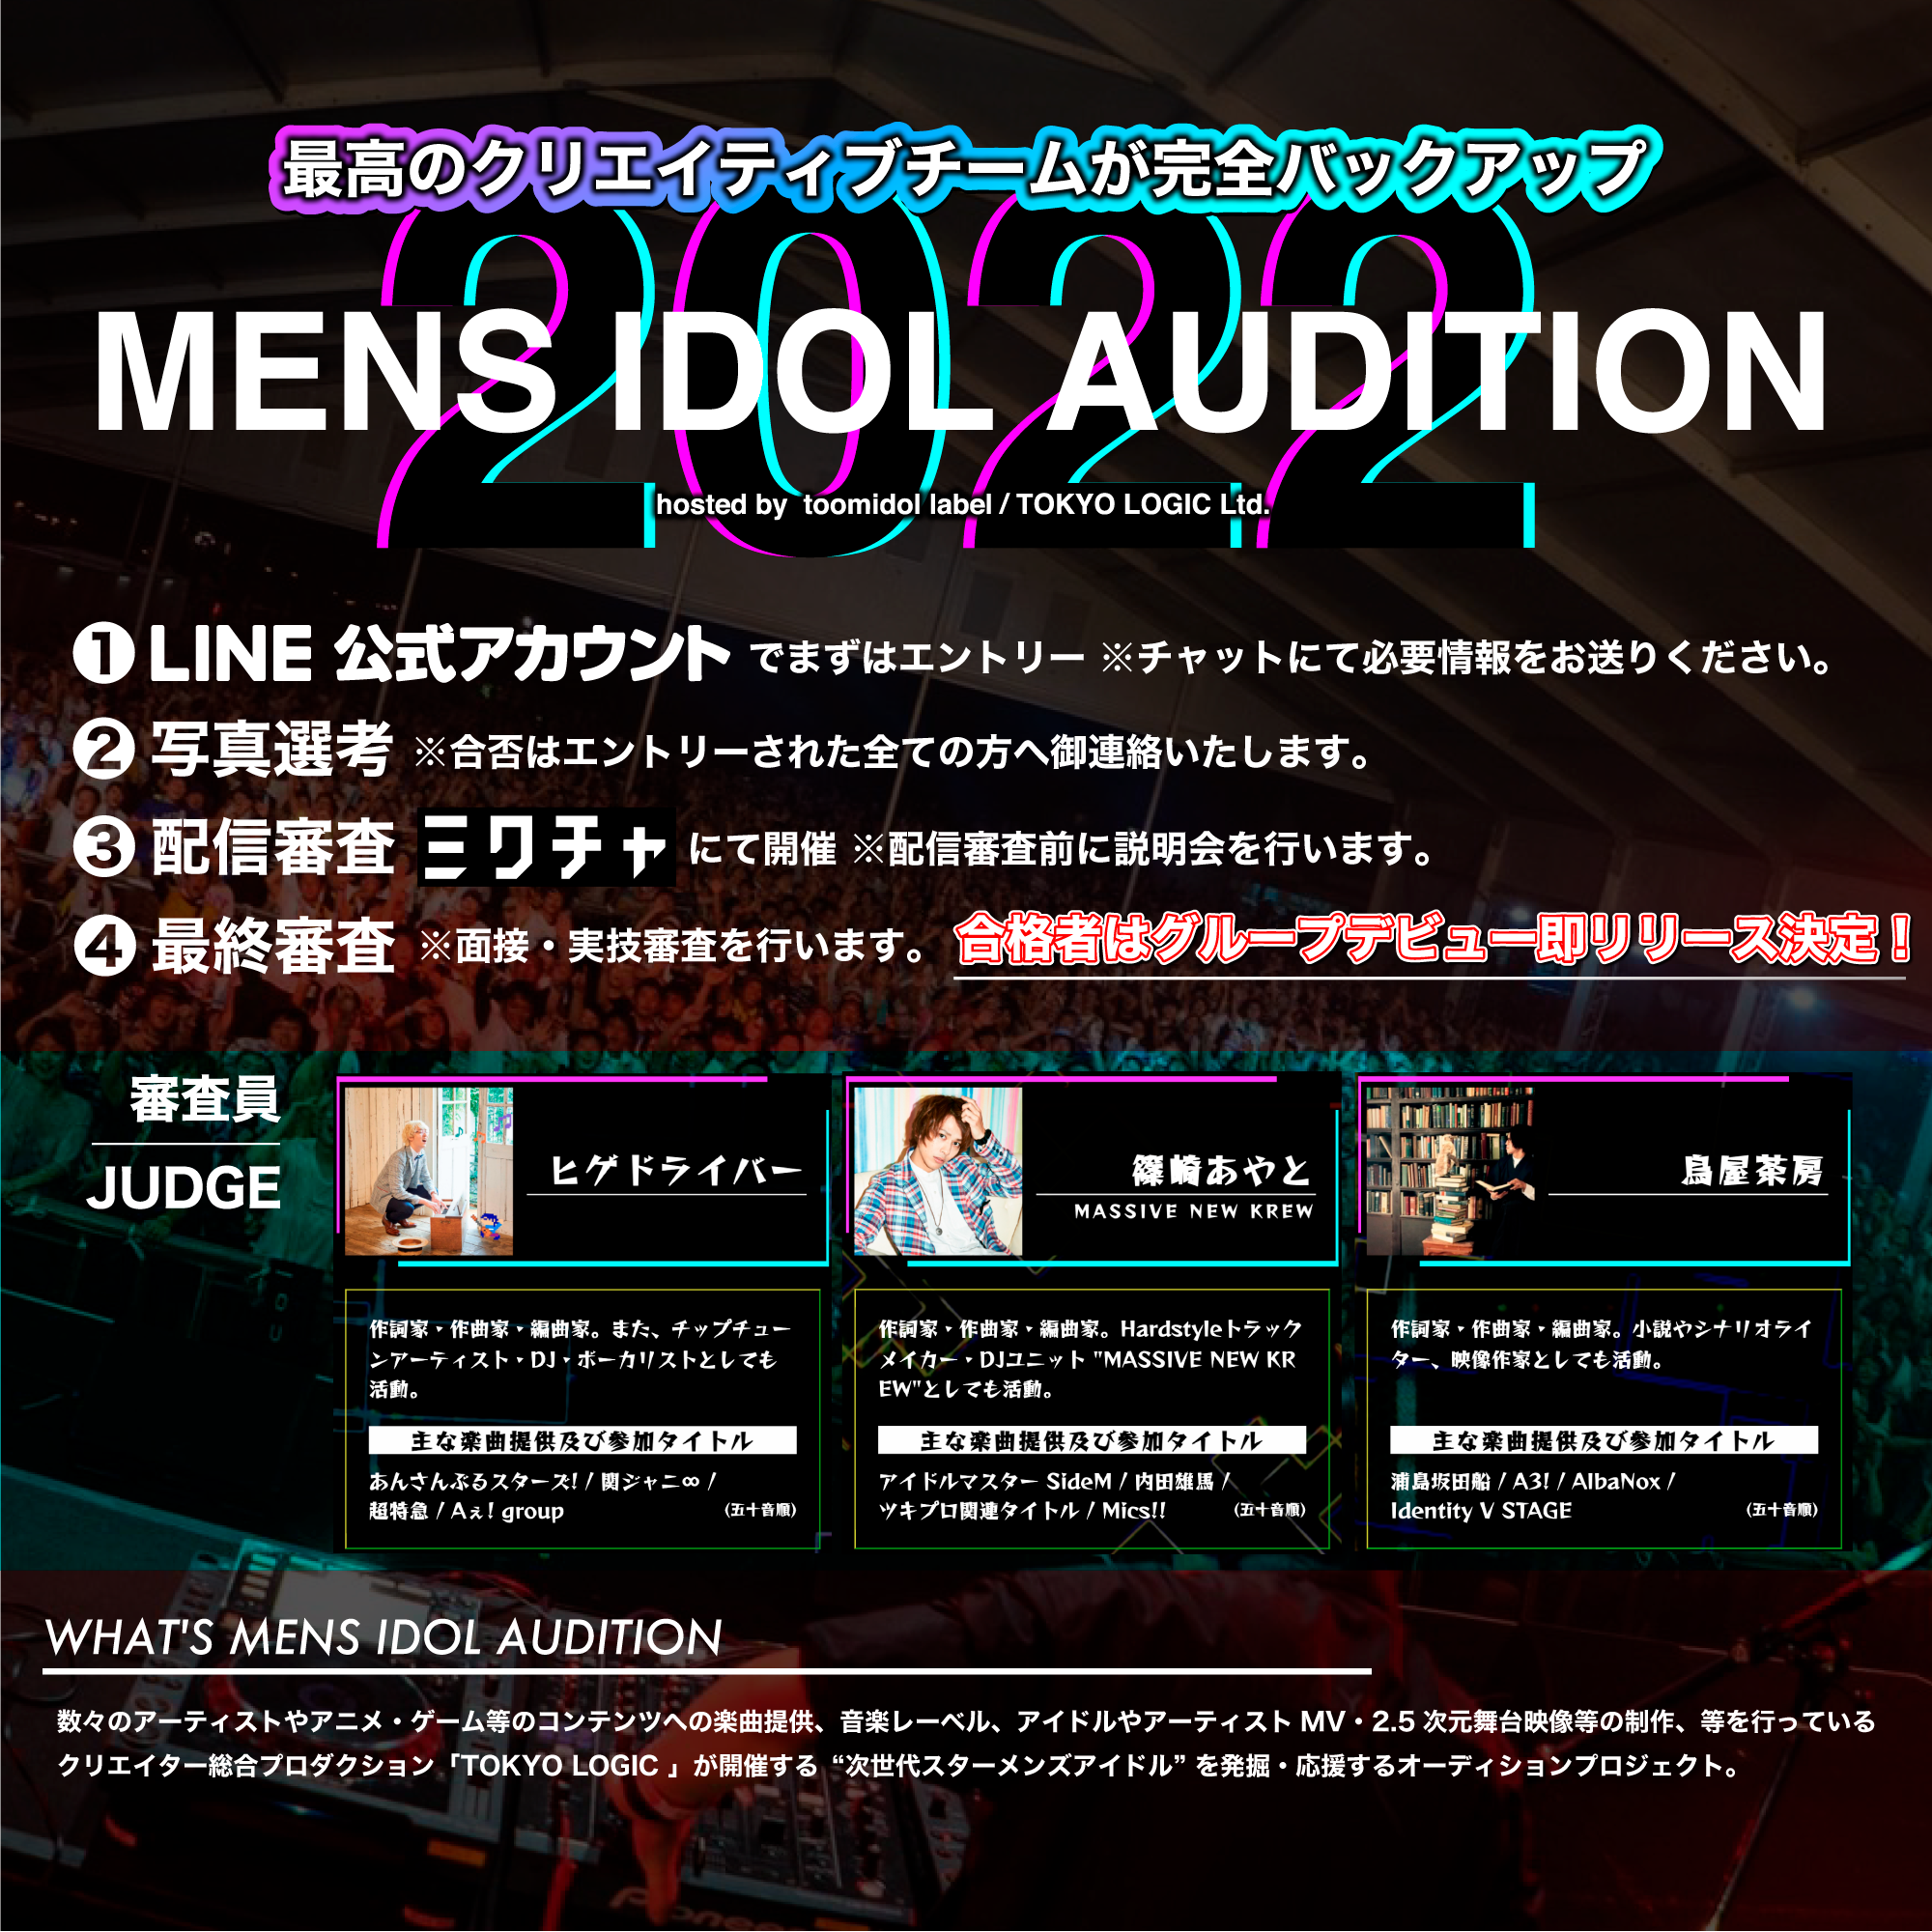 オーディション 株式会社TOKYO LOGIC メンズアイドルオーディション 新進喜悦のクリエイティブチームと一緒に夢を叶えよう 主催：株式会社TOKYO LOGIC、カテゴリ：メンズアイドル